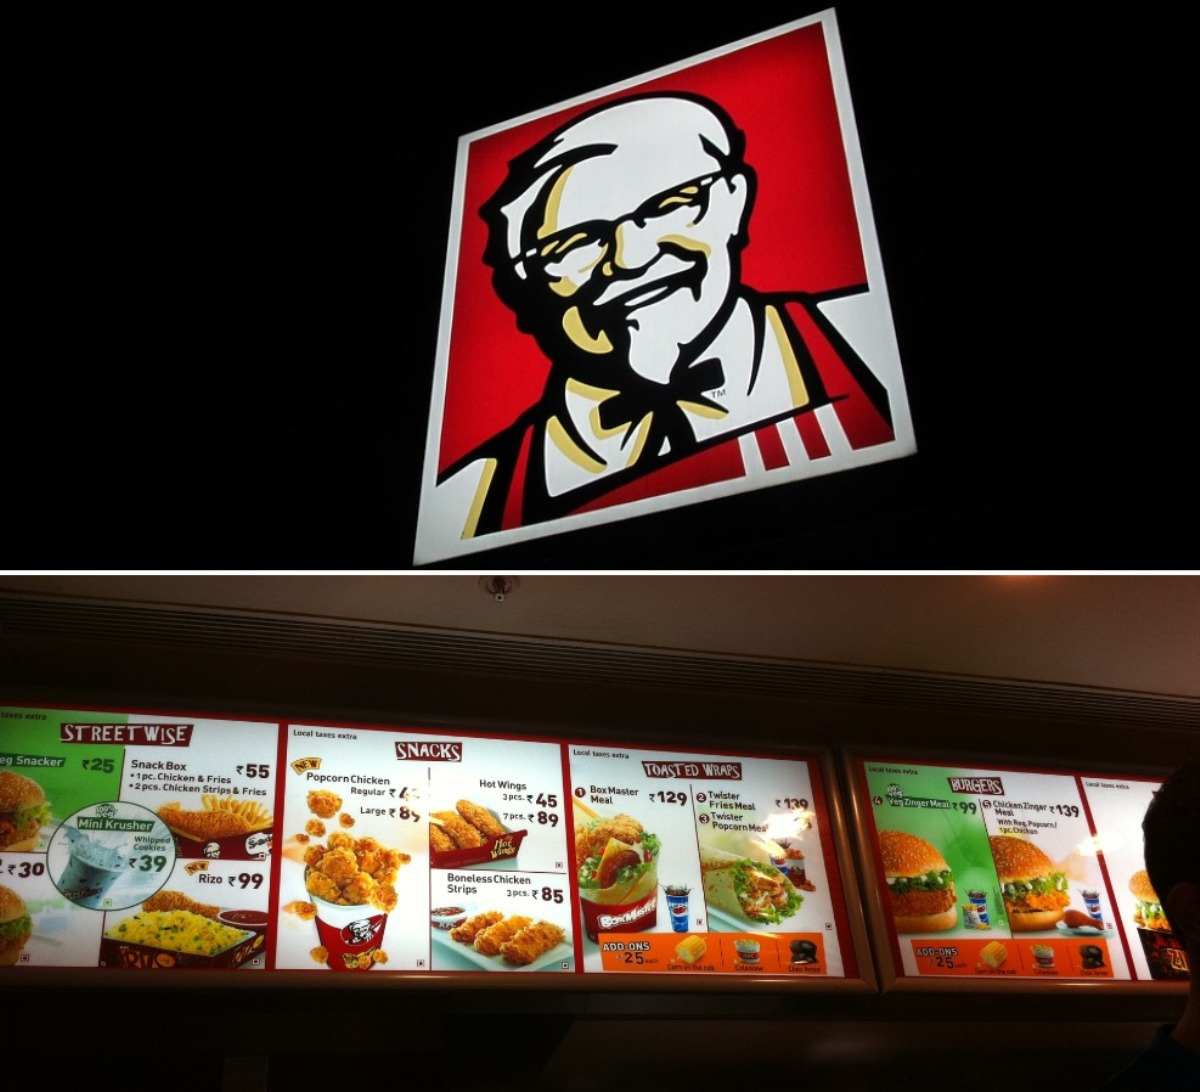 About KFC.